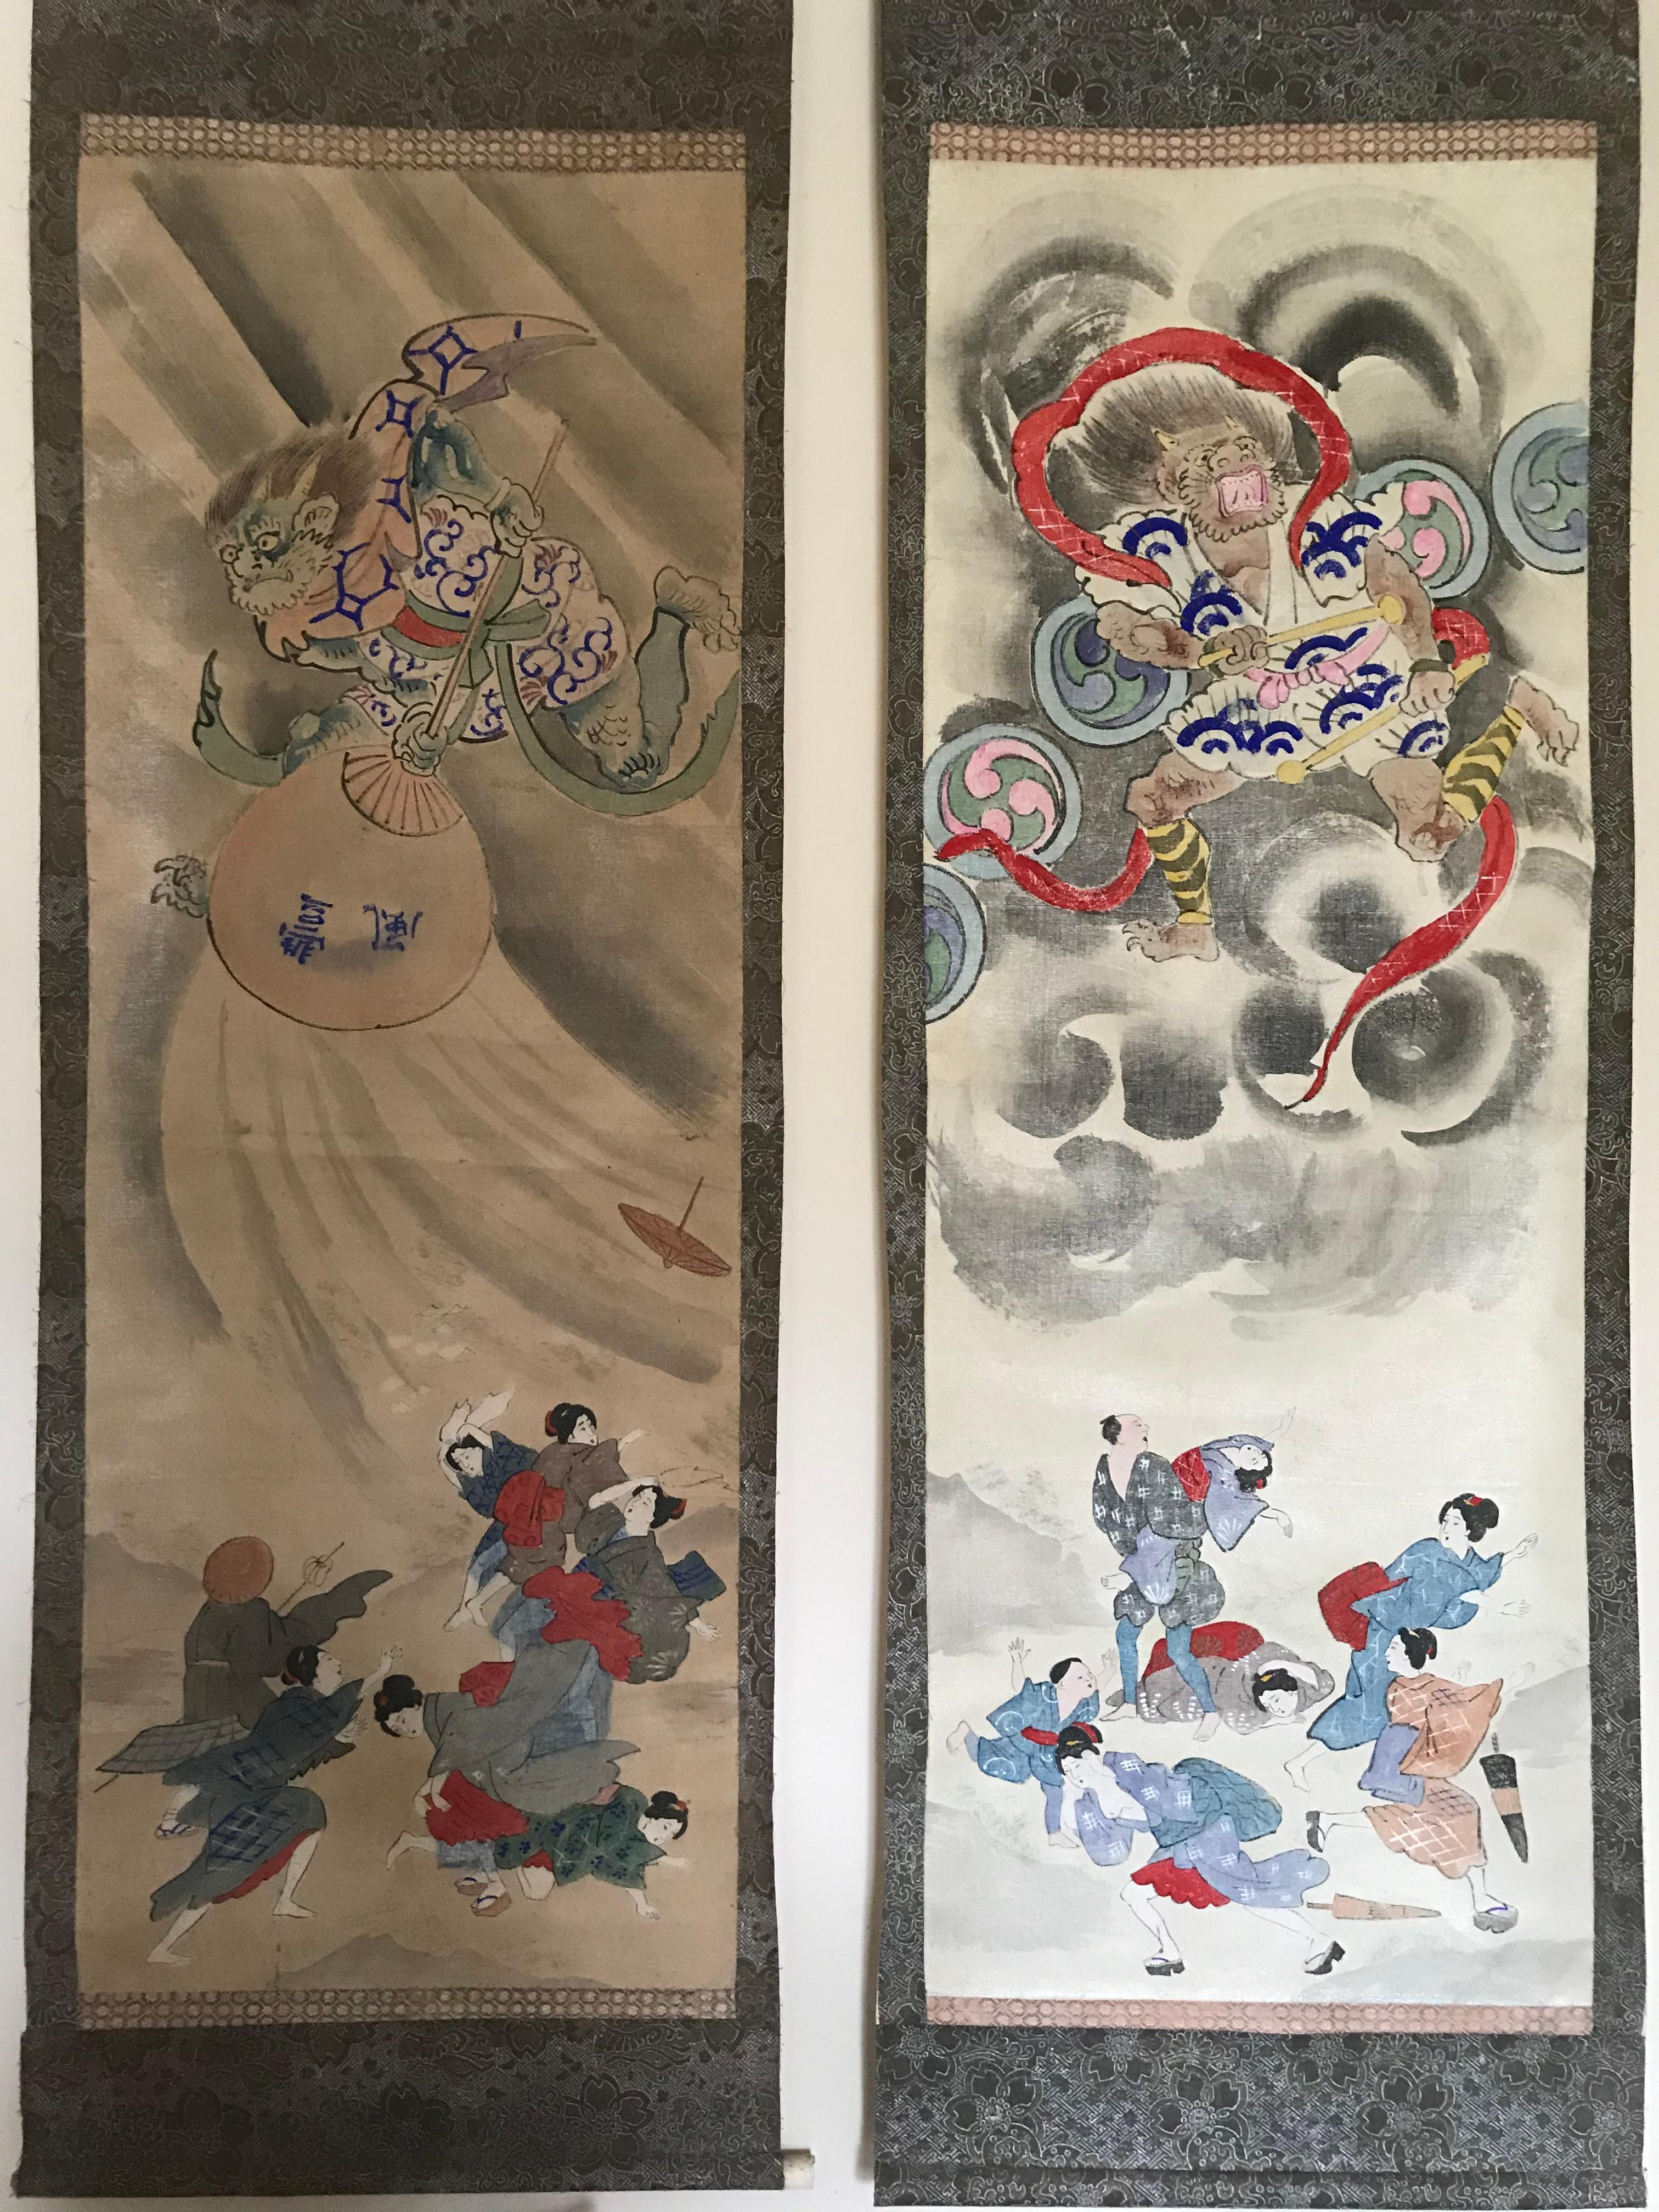 Magnifique ensemble de 6 grands kakemonos de la mythologie japonaise du 19e siècle. 
Support papier avec toile collée sur le papier 
Merveilleux ensemble qui fait partie de l'histoire et des croyances du Japon.
Lorsqu'ils ne sont pas suspendus,